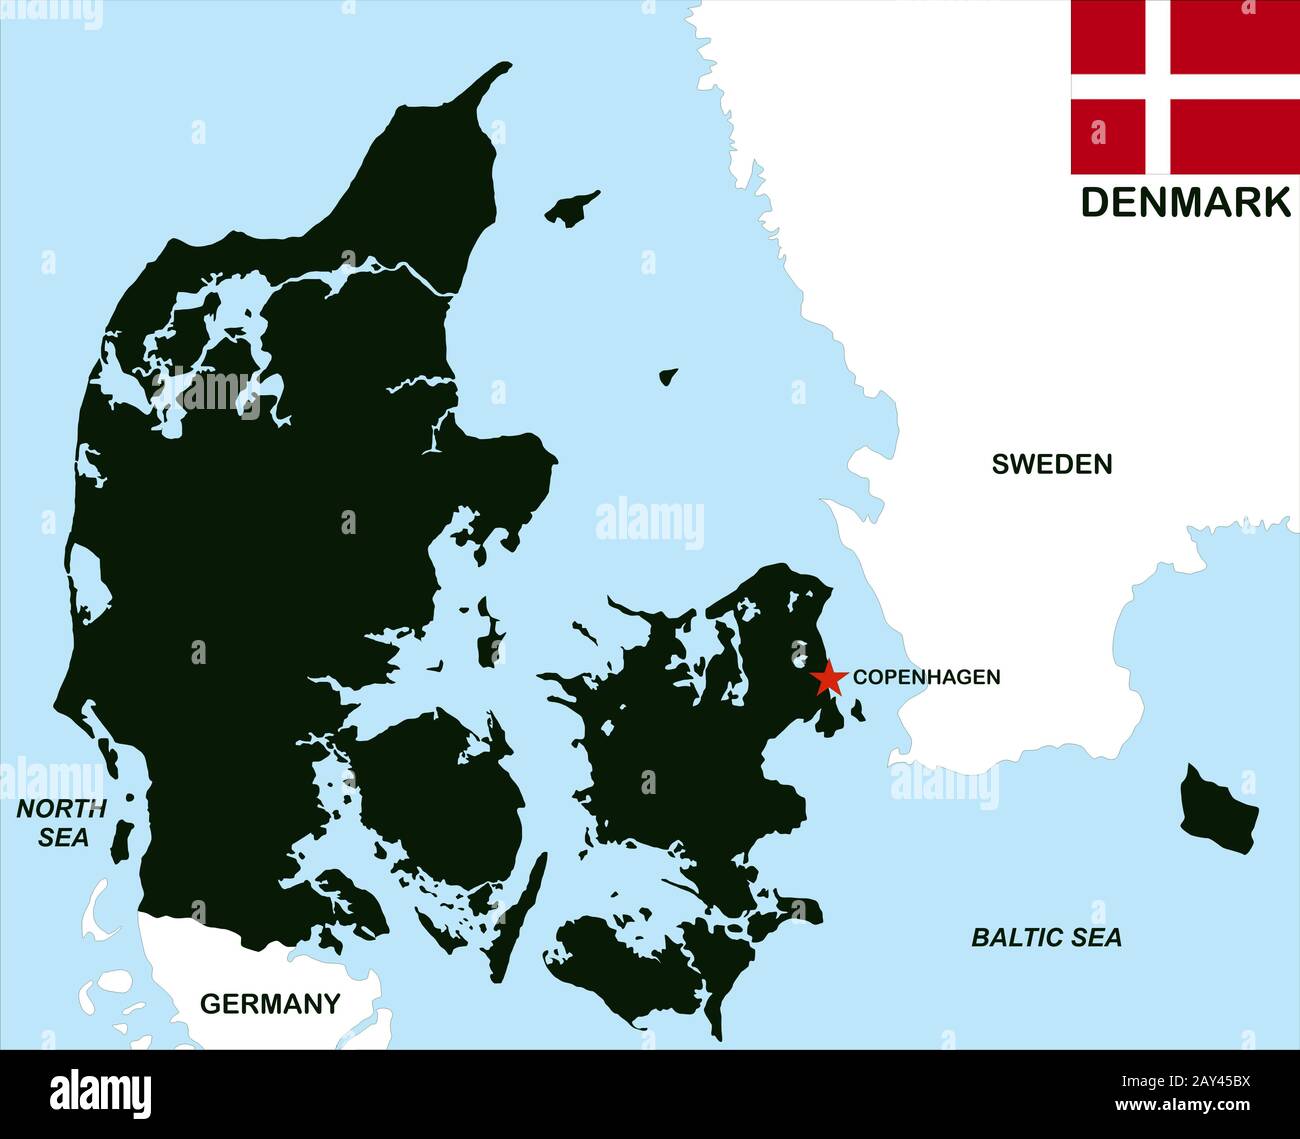 denmark political map Stock Photo